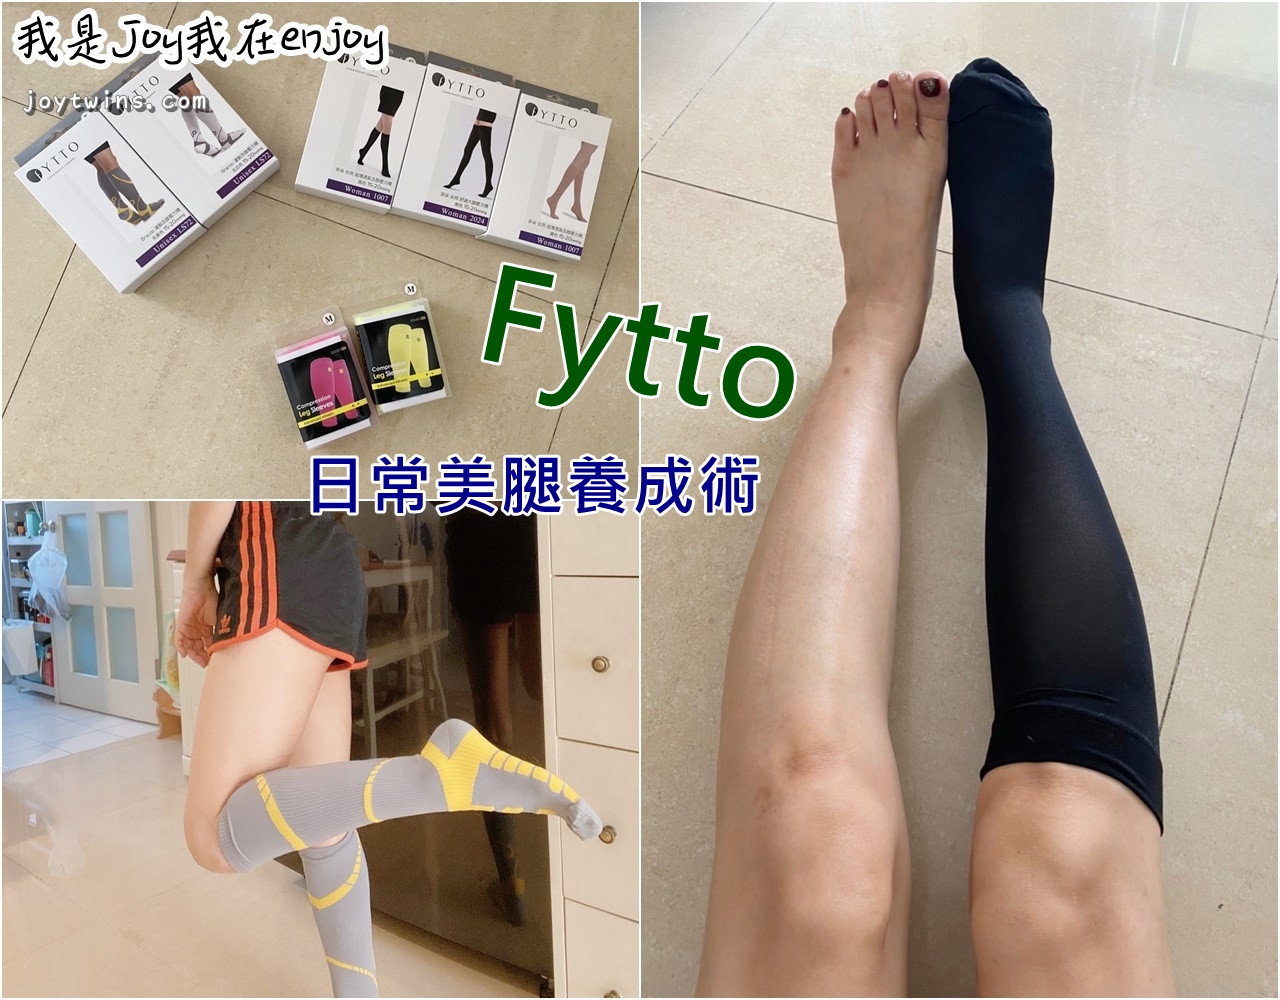 美腿必備 Fytto小腿襪套 壓力襪 肌肉發達好礙眼! 通通來看美腿襪大軍使用分享 (美腿養成密技)